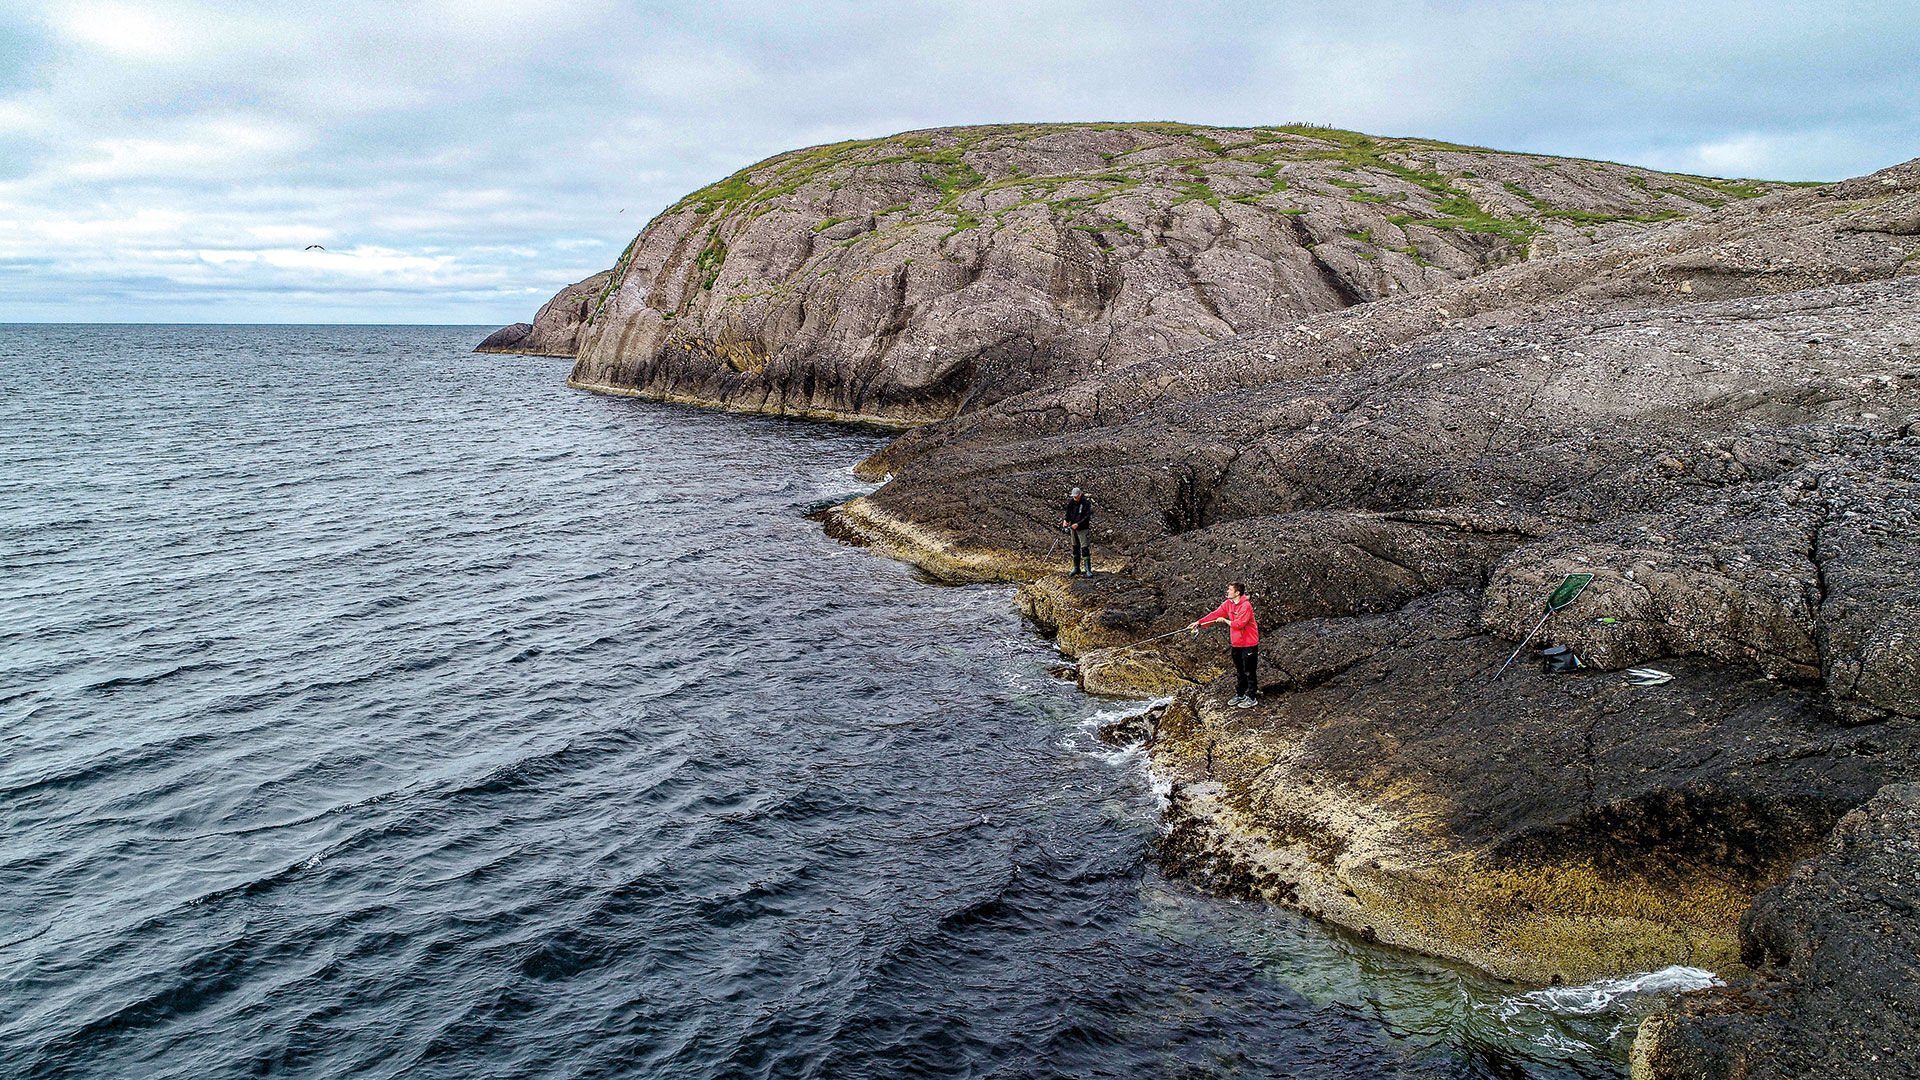  So sieht der perfekte Spot aus: Steile, aber noch begehbare Felsen am Ufer. Das Foto entstand übrigens nicht im Fjord, sondern an der offenen Küste, genauer gesagt auf Storslåttøya weiter im Norden. Uferangeln ist überall möglich!  